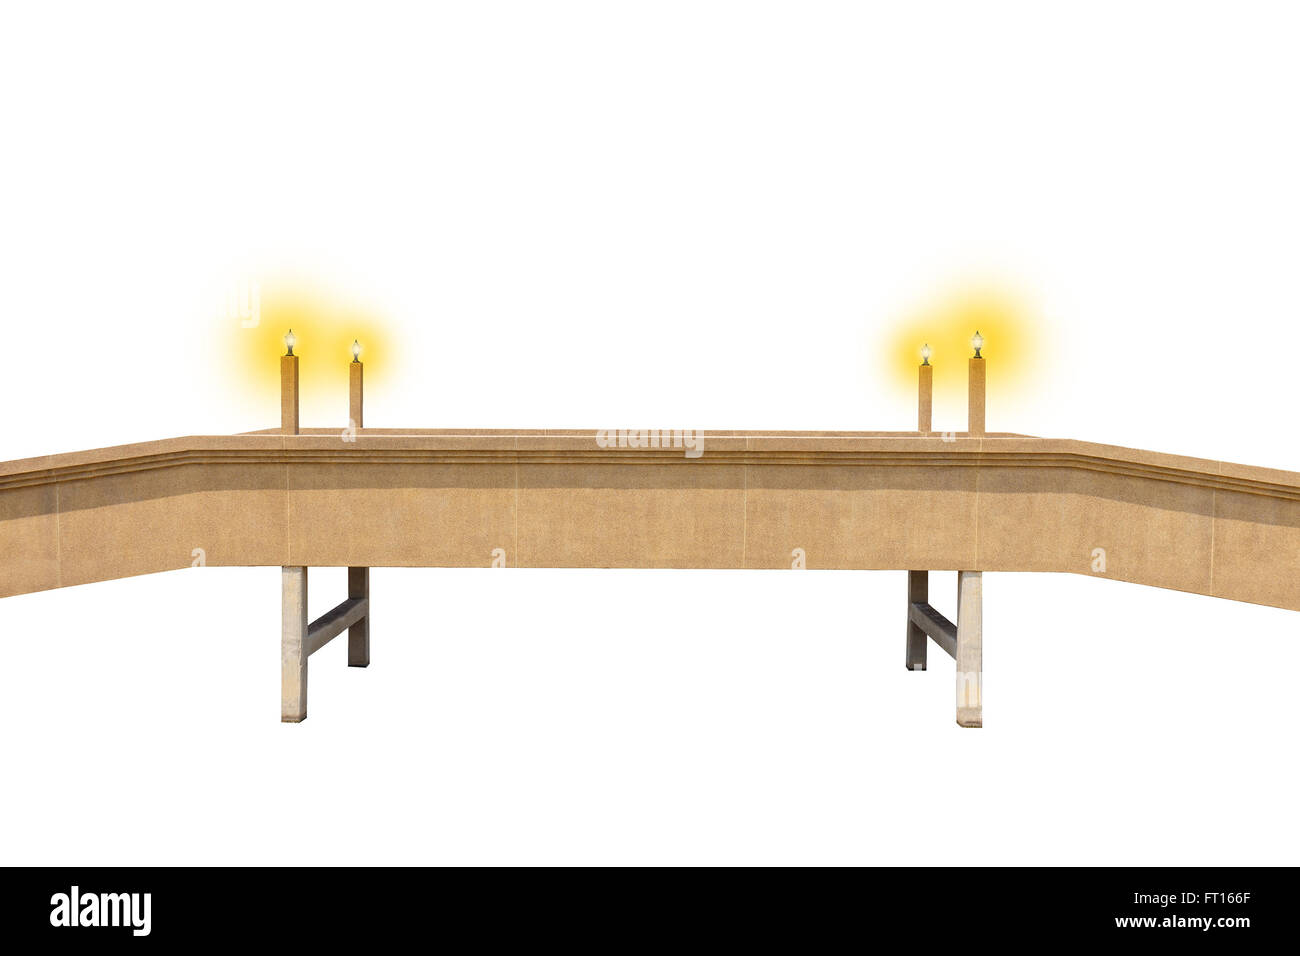 Isolierte kleine Brücke mit leuchtender Lampe Pfosten auf dem weißen Hintergrund Stockfoto